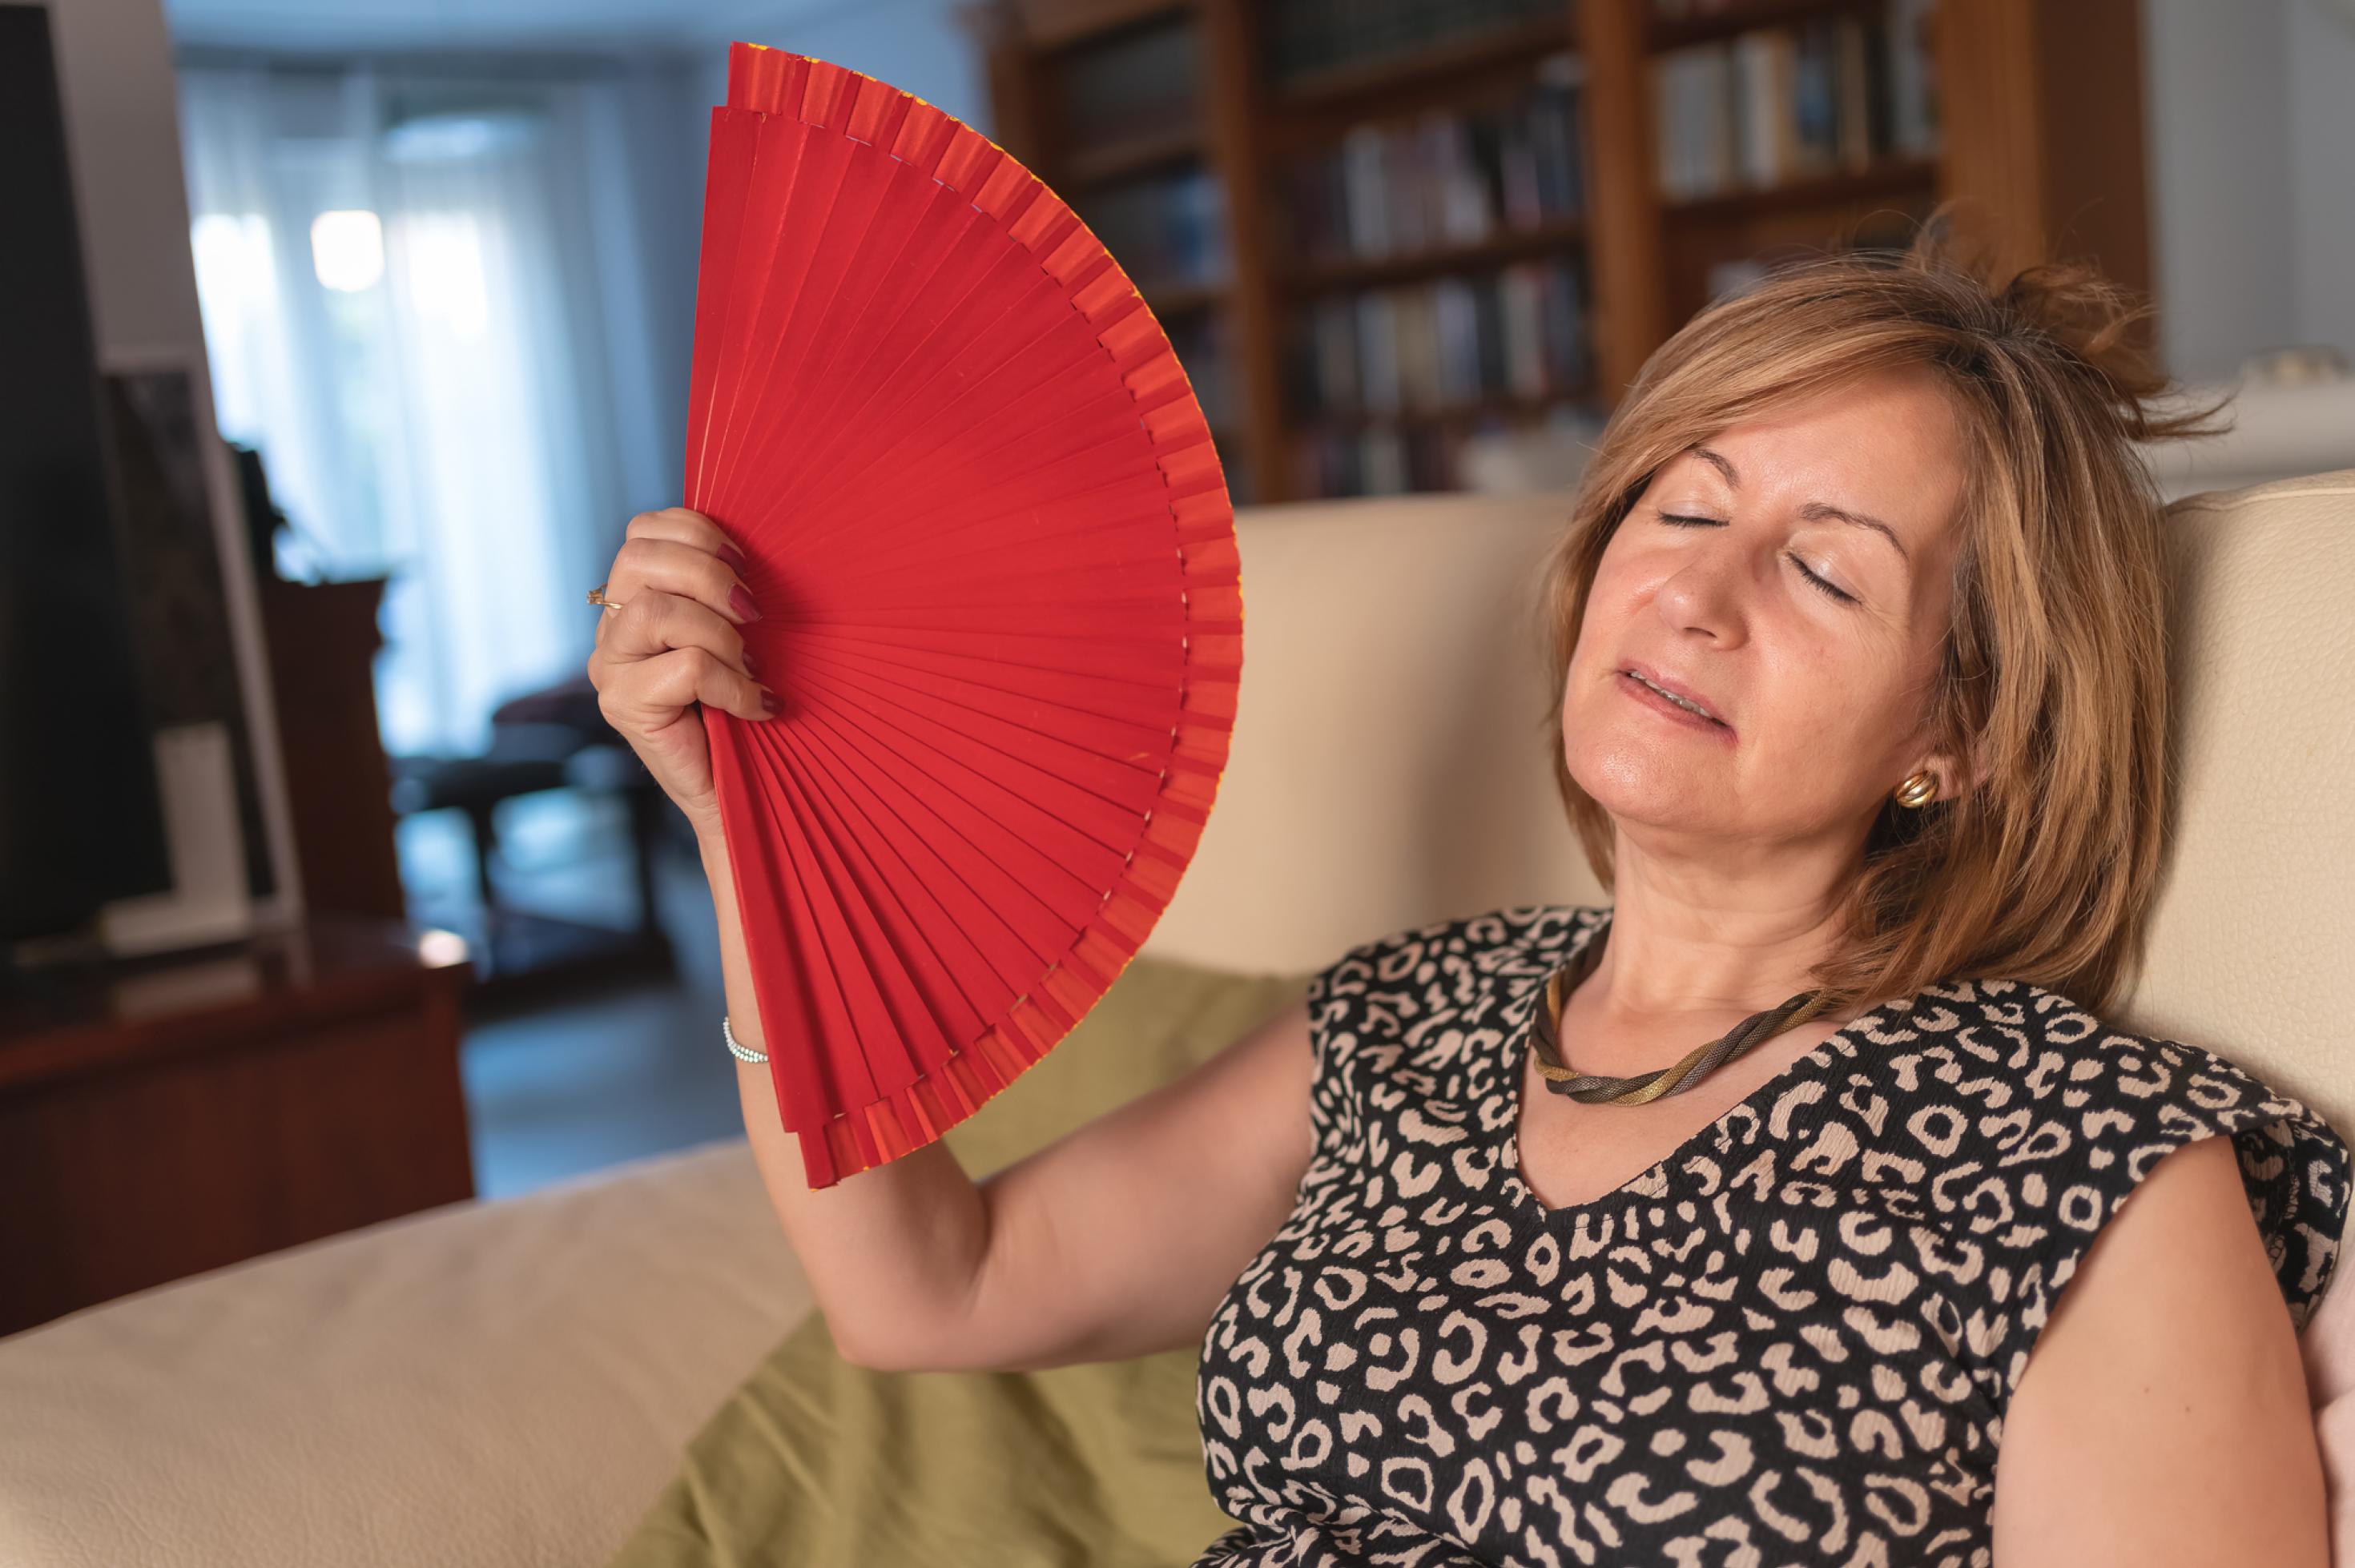 Frau im mittleren Alter, sitzt in ihrem Wohnzimmer auf dem Sofa und wedelt mit einem roten Handfächer vor ihrem Gesicht, um sich abzukühlen